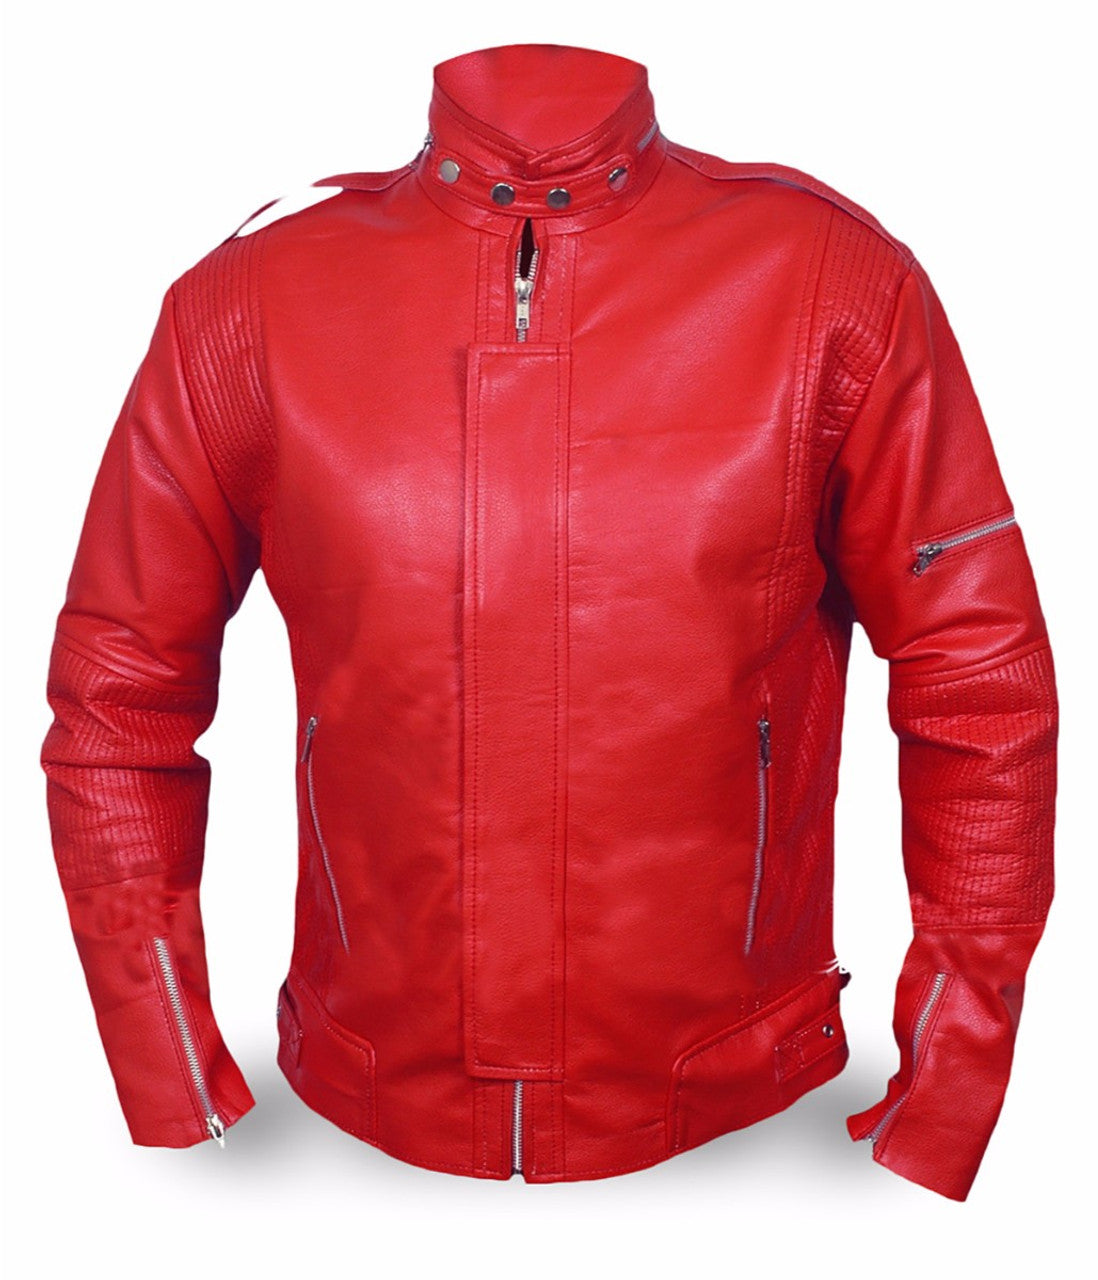 daft punk leather jacket men's leather jacket red biker leather jacket men's red leather jacket daft punk red jacket genuine leather jacket handmade leather jacket for men winter jacket men 